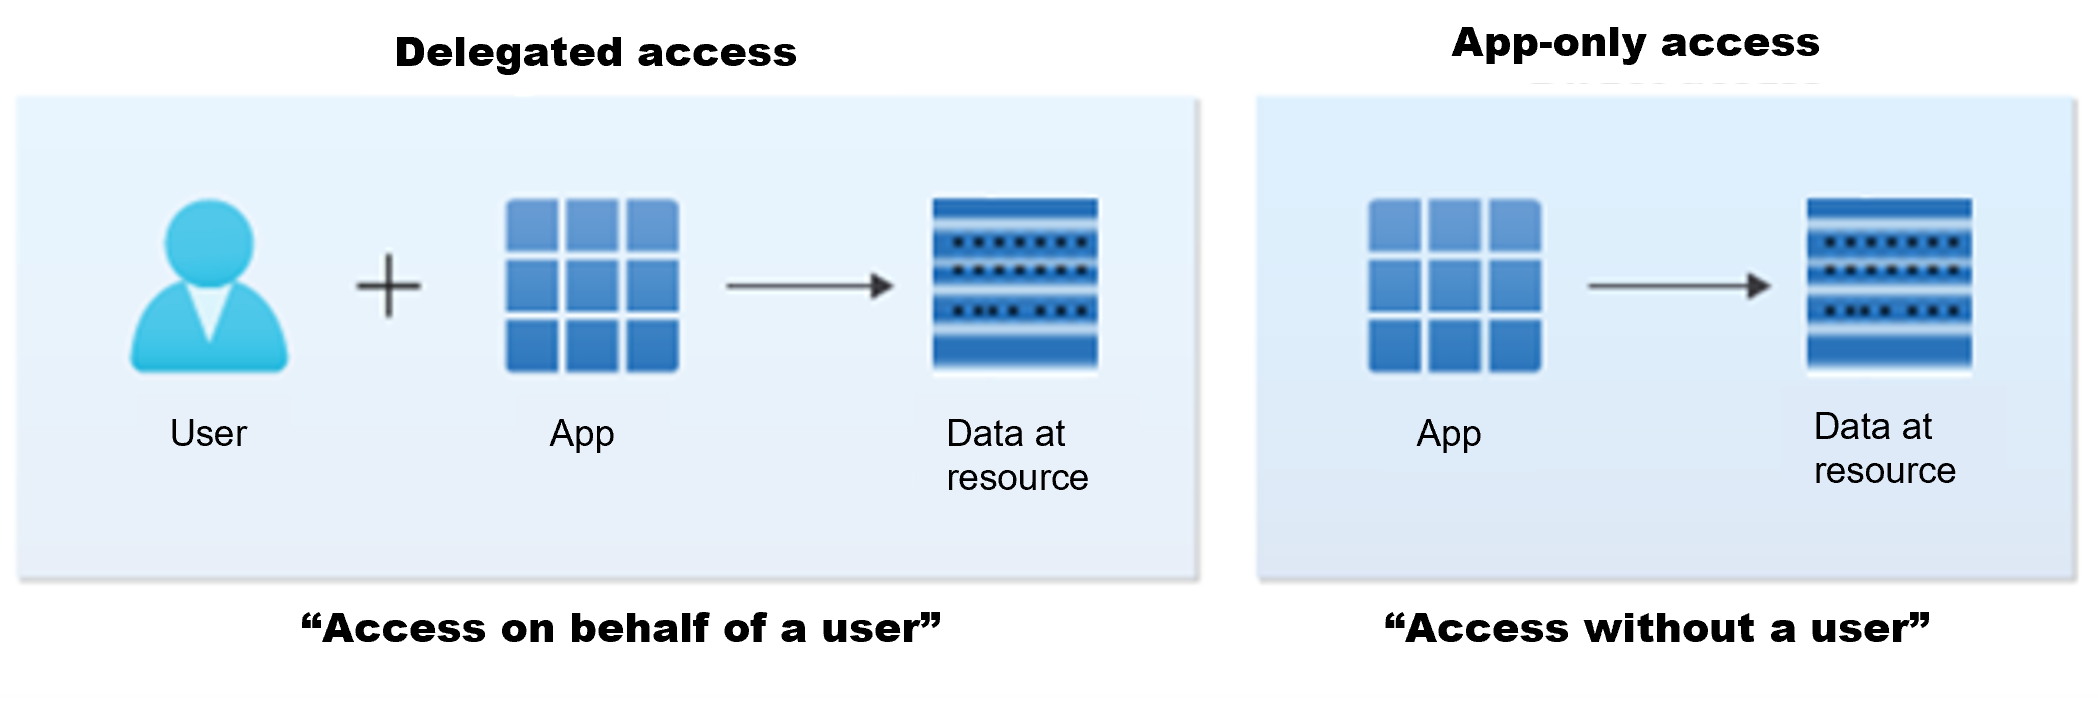 Иллюстрация сценариев делегированного доступа и доступа только для приложений в платформа удостоверений Майкрософт.